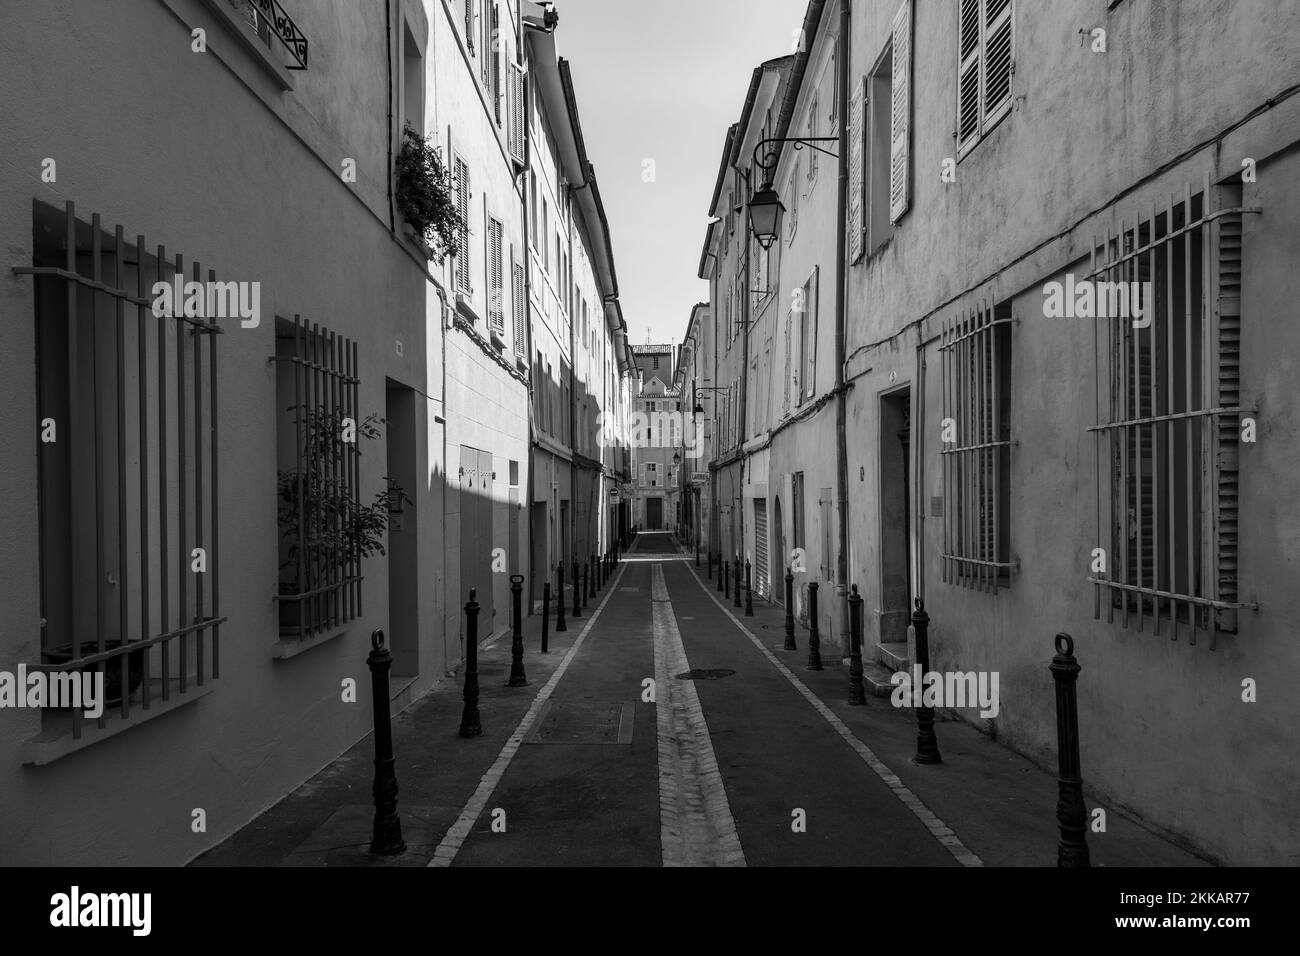 AIX en Provence, France - 8 juillet 2015 : petites vieilles rues de la vieille ville d'Aix en Provence aux façades françaises typiques. Banque D'Images